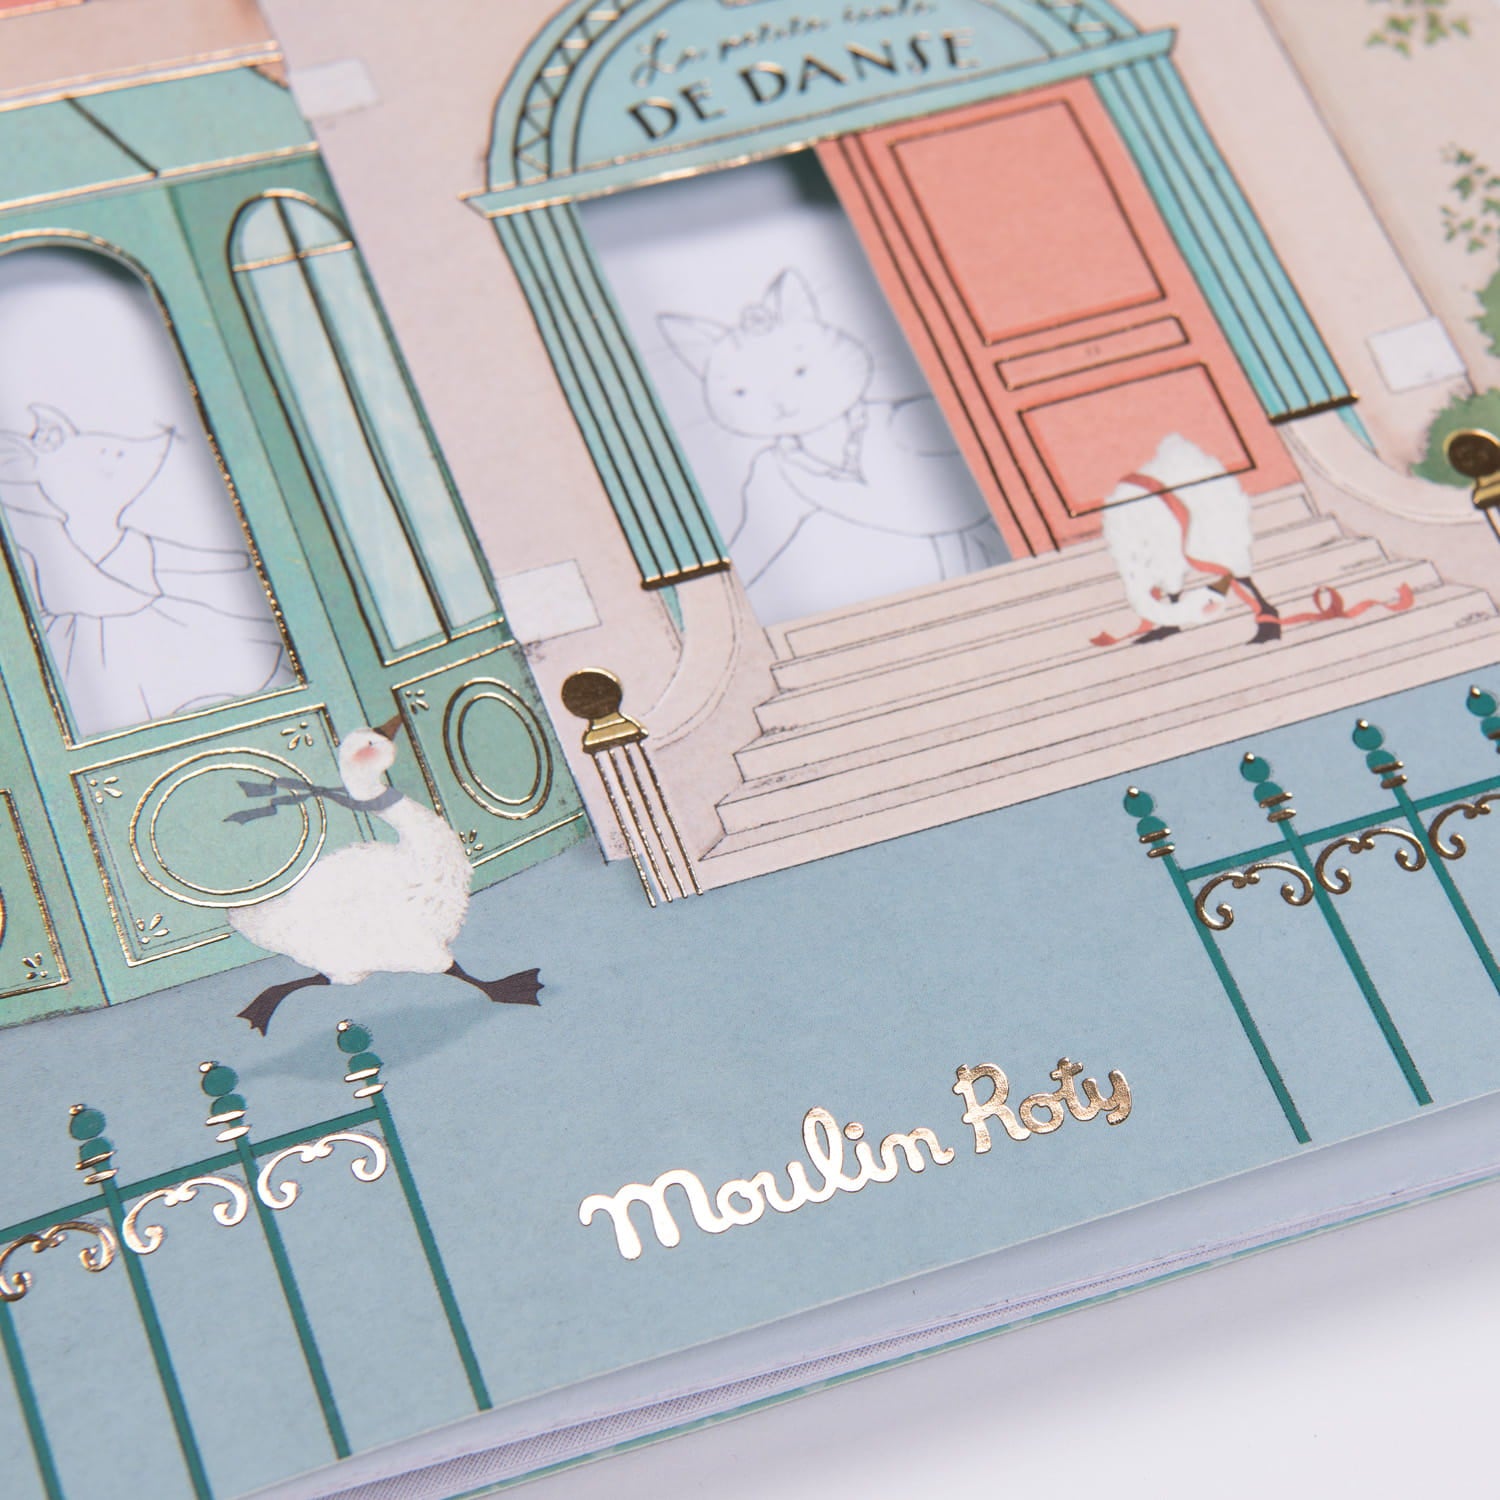 Moulin Roty: Libro para colorear con pegatinas casa de ratón